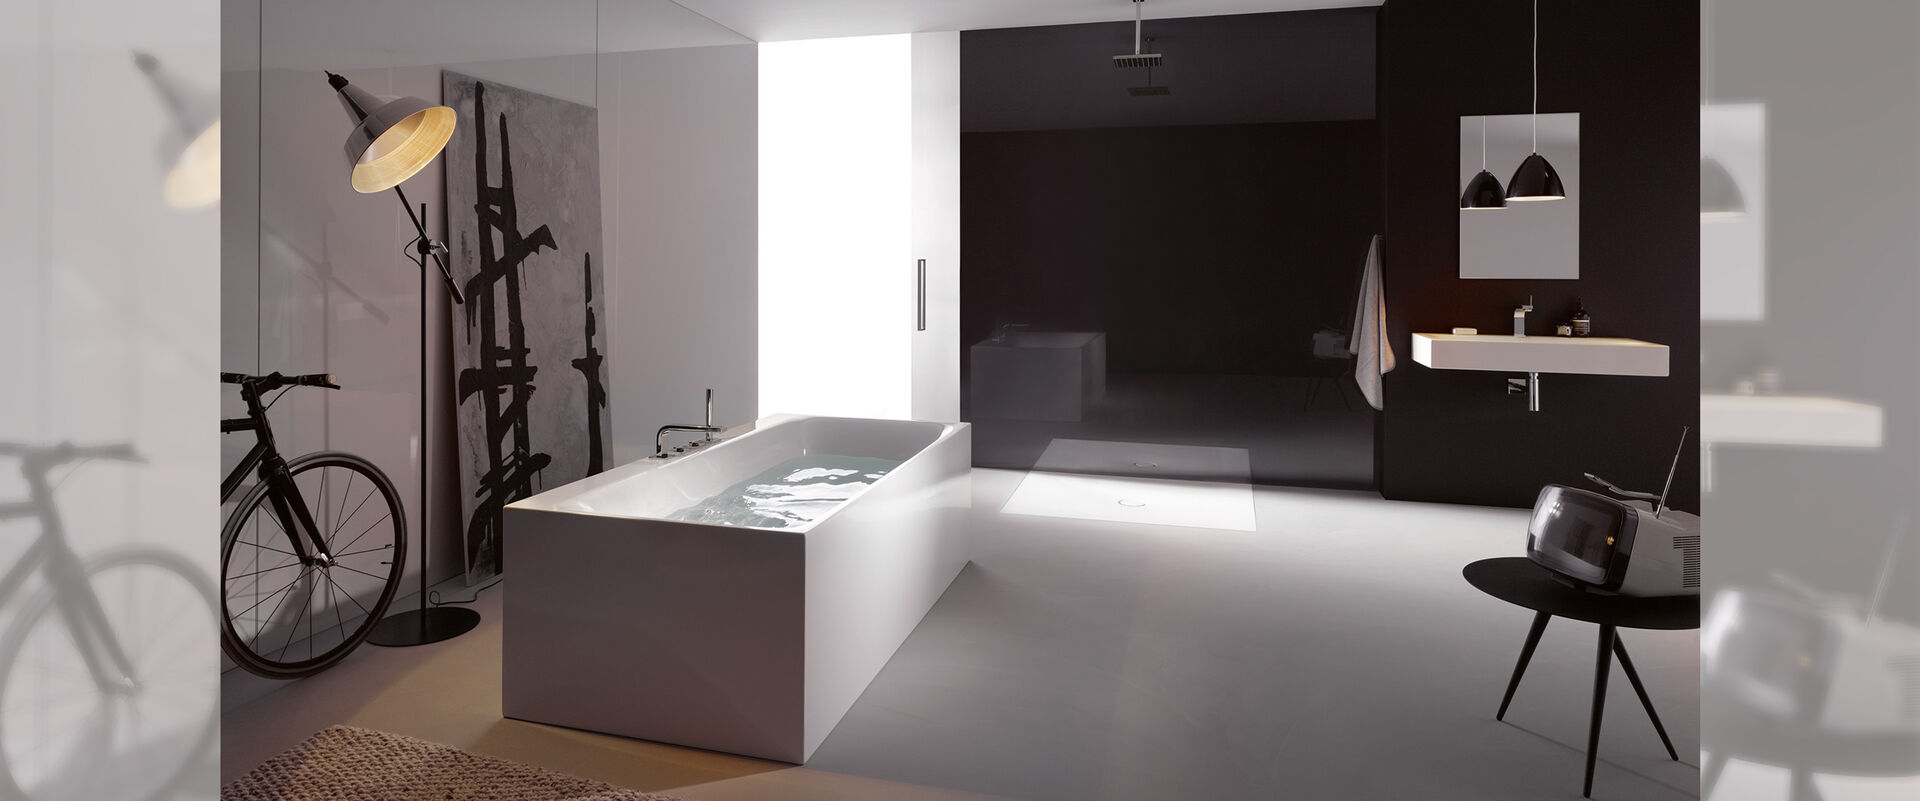 Designbad mit freistehender Badewanne, begehbarer Dusche und Waschbecken.